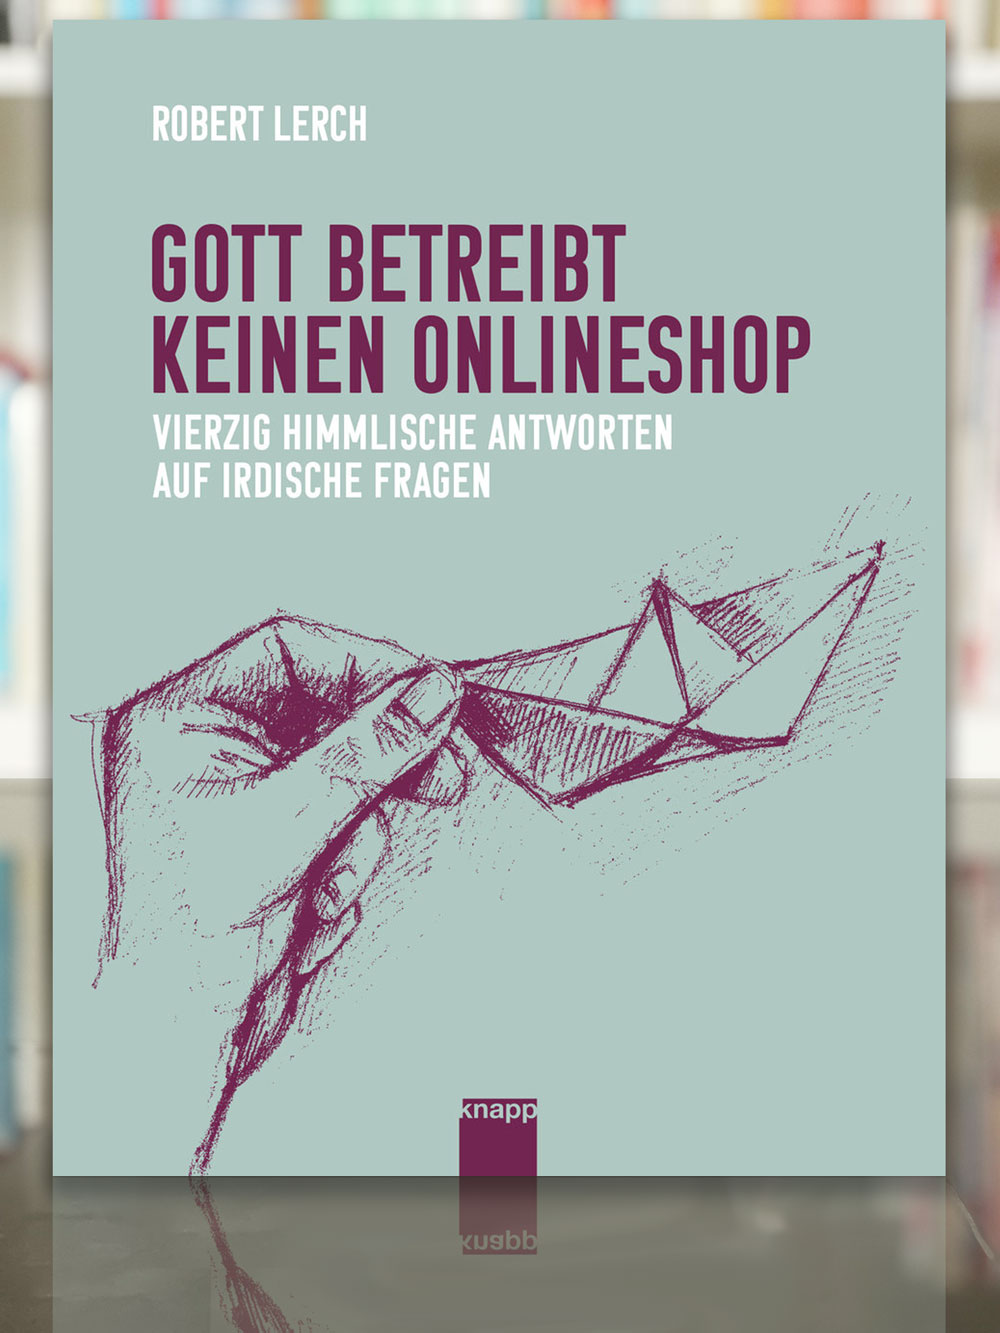 Robert Lerch, Gott betreibt keinen Onlineshop. 2023, Knapp Verlag